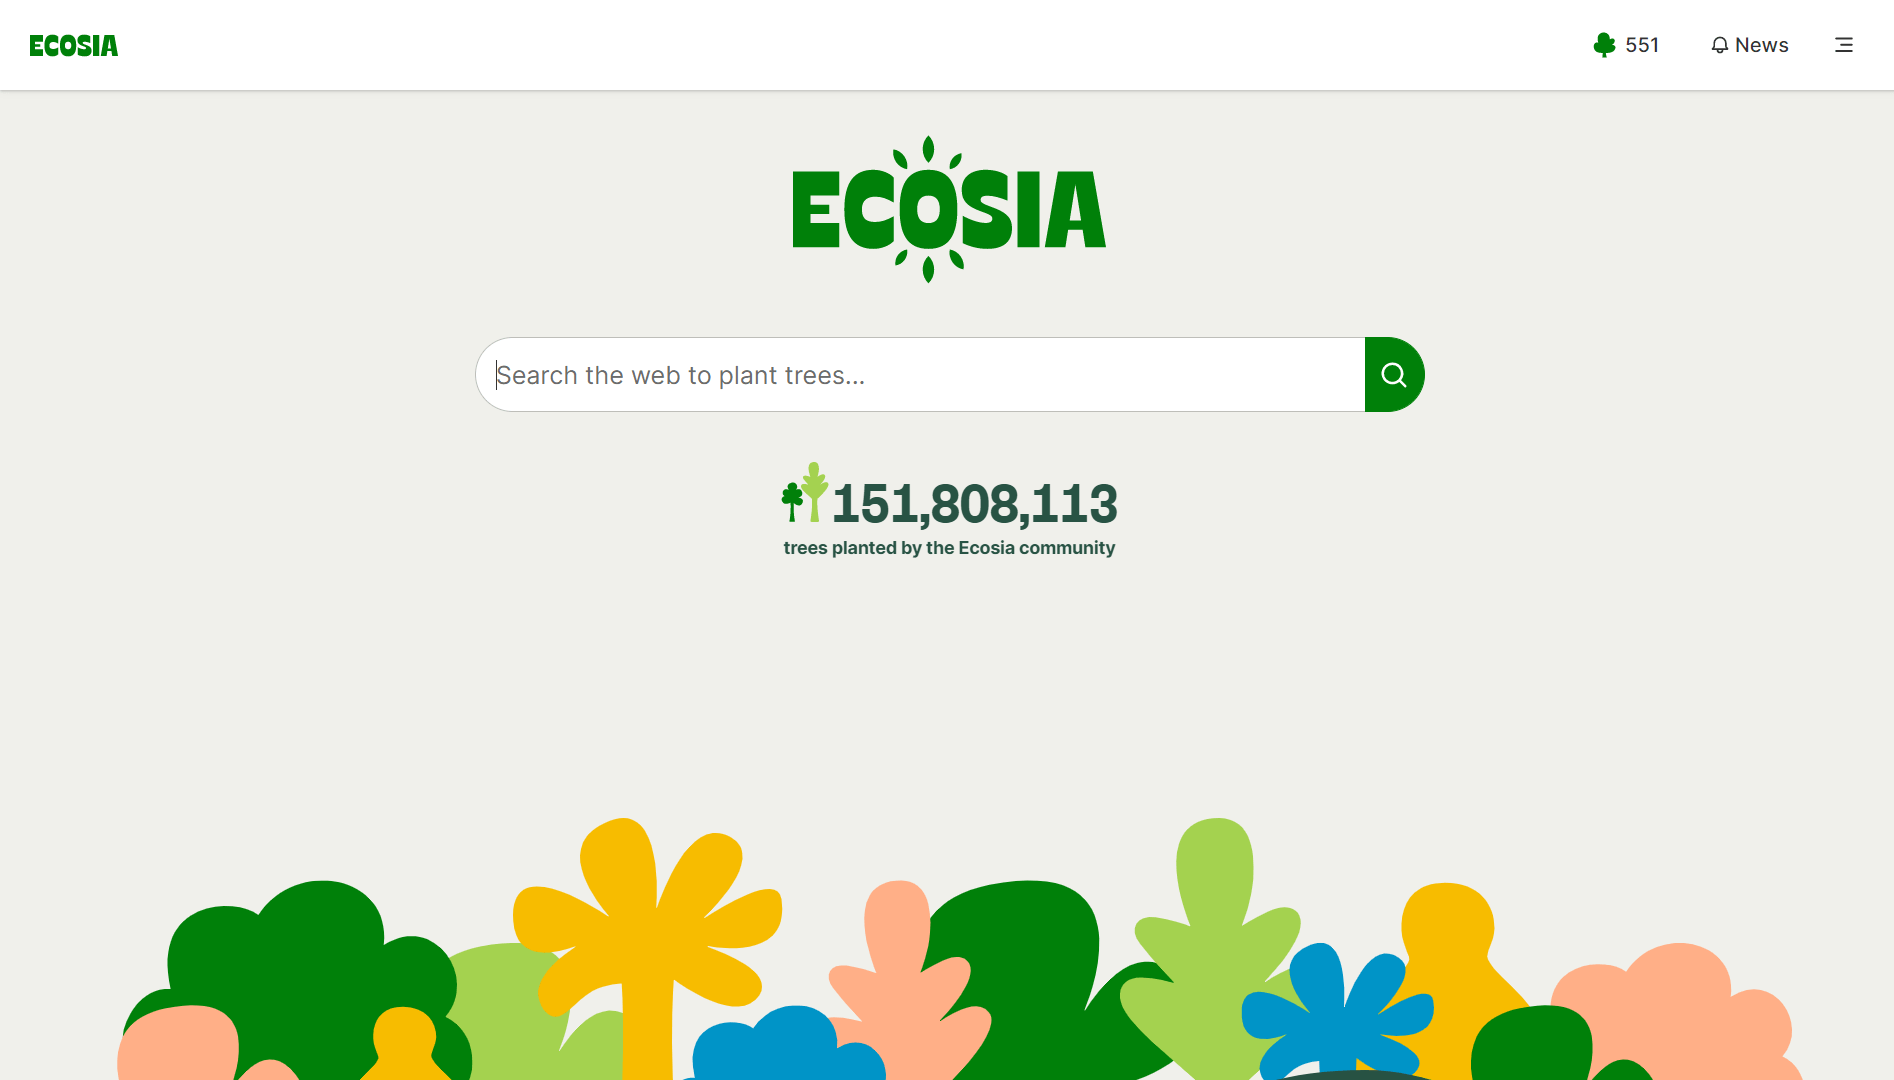 德国环保搜索引擎 Ecosia 启用新LOGO